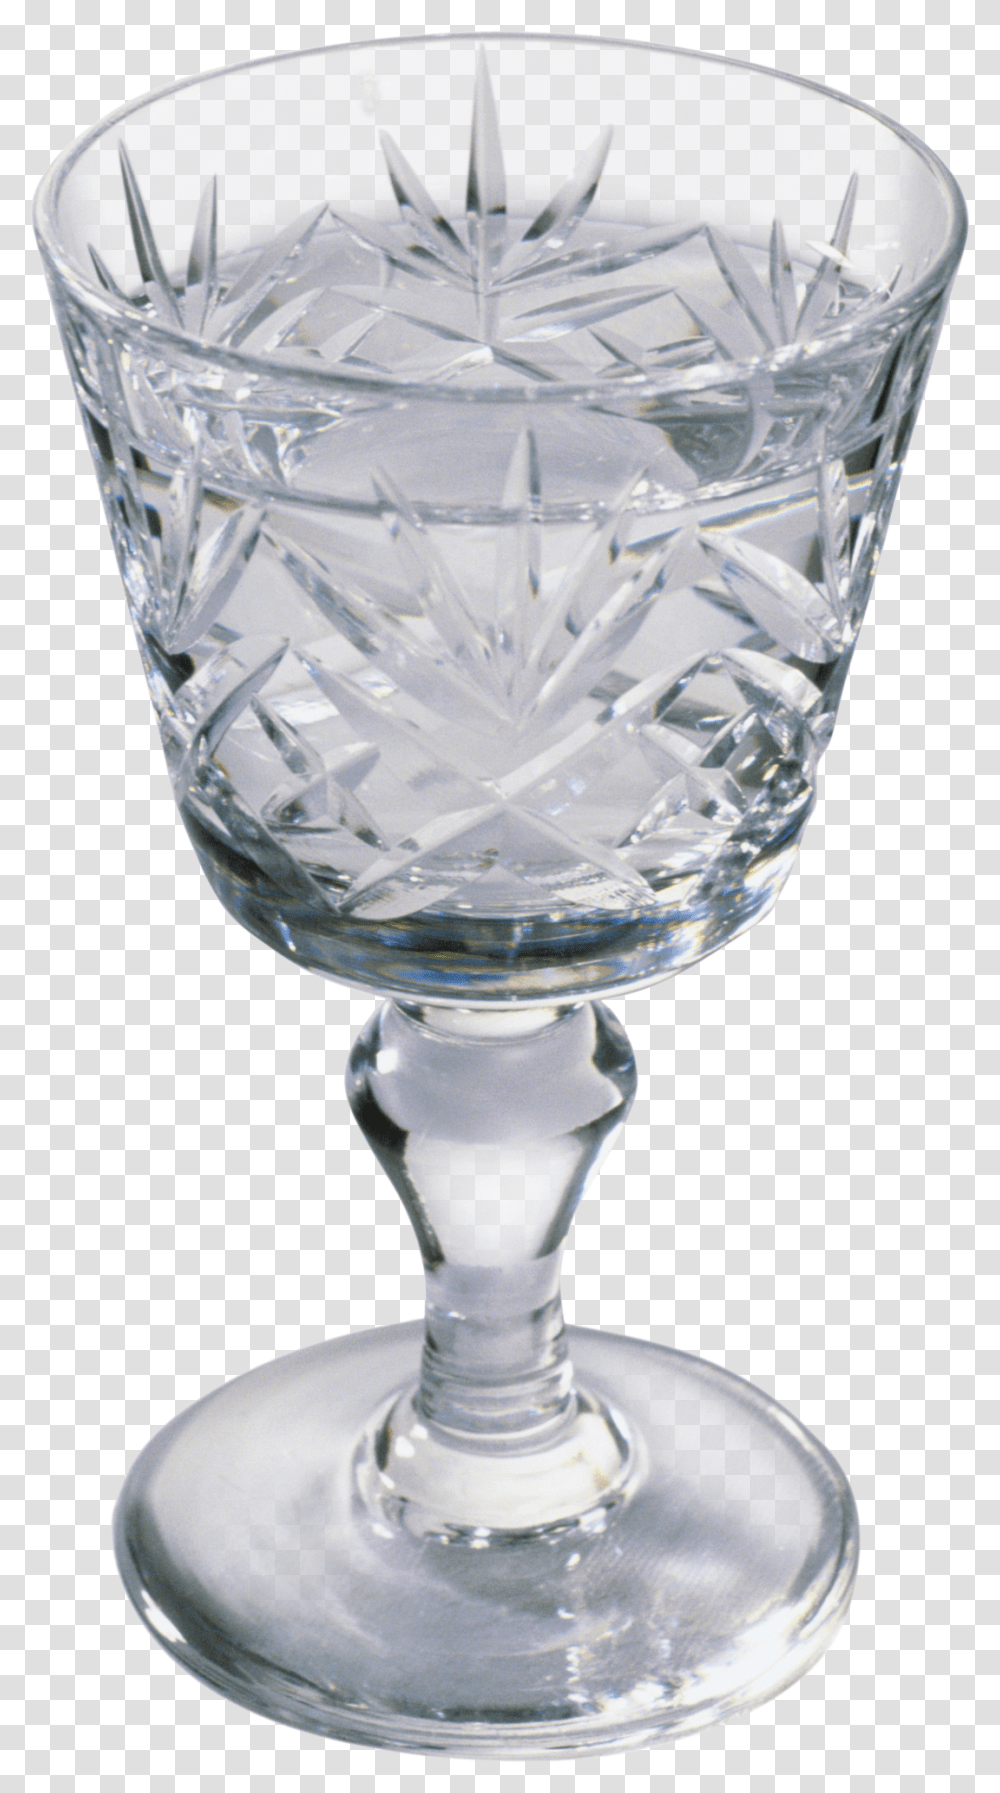 Wine Glass Image Ryumka Vodka, Goblet, Alcohol, Beverage, Drink Transparent Png